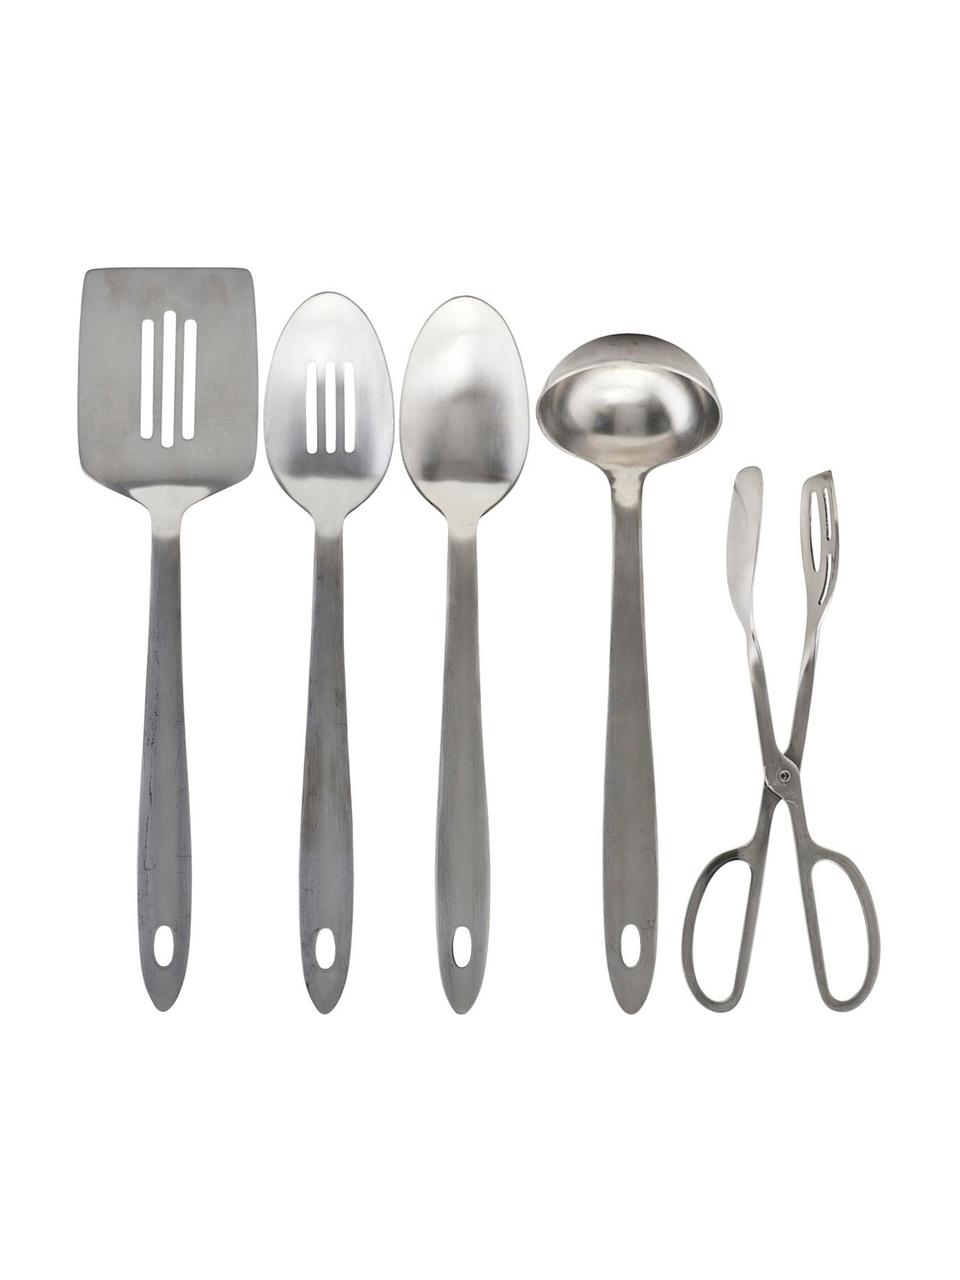 Küchenutensilien Take in Silber, 5er-Set, Edelstahl, Silberfarben, Sondergrößen